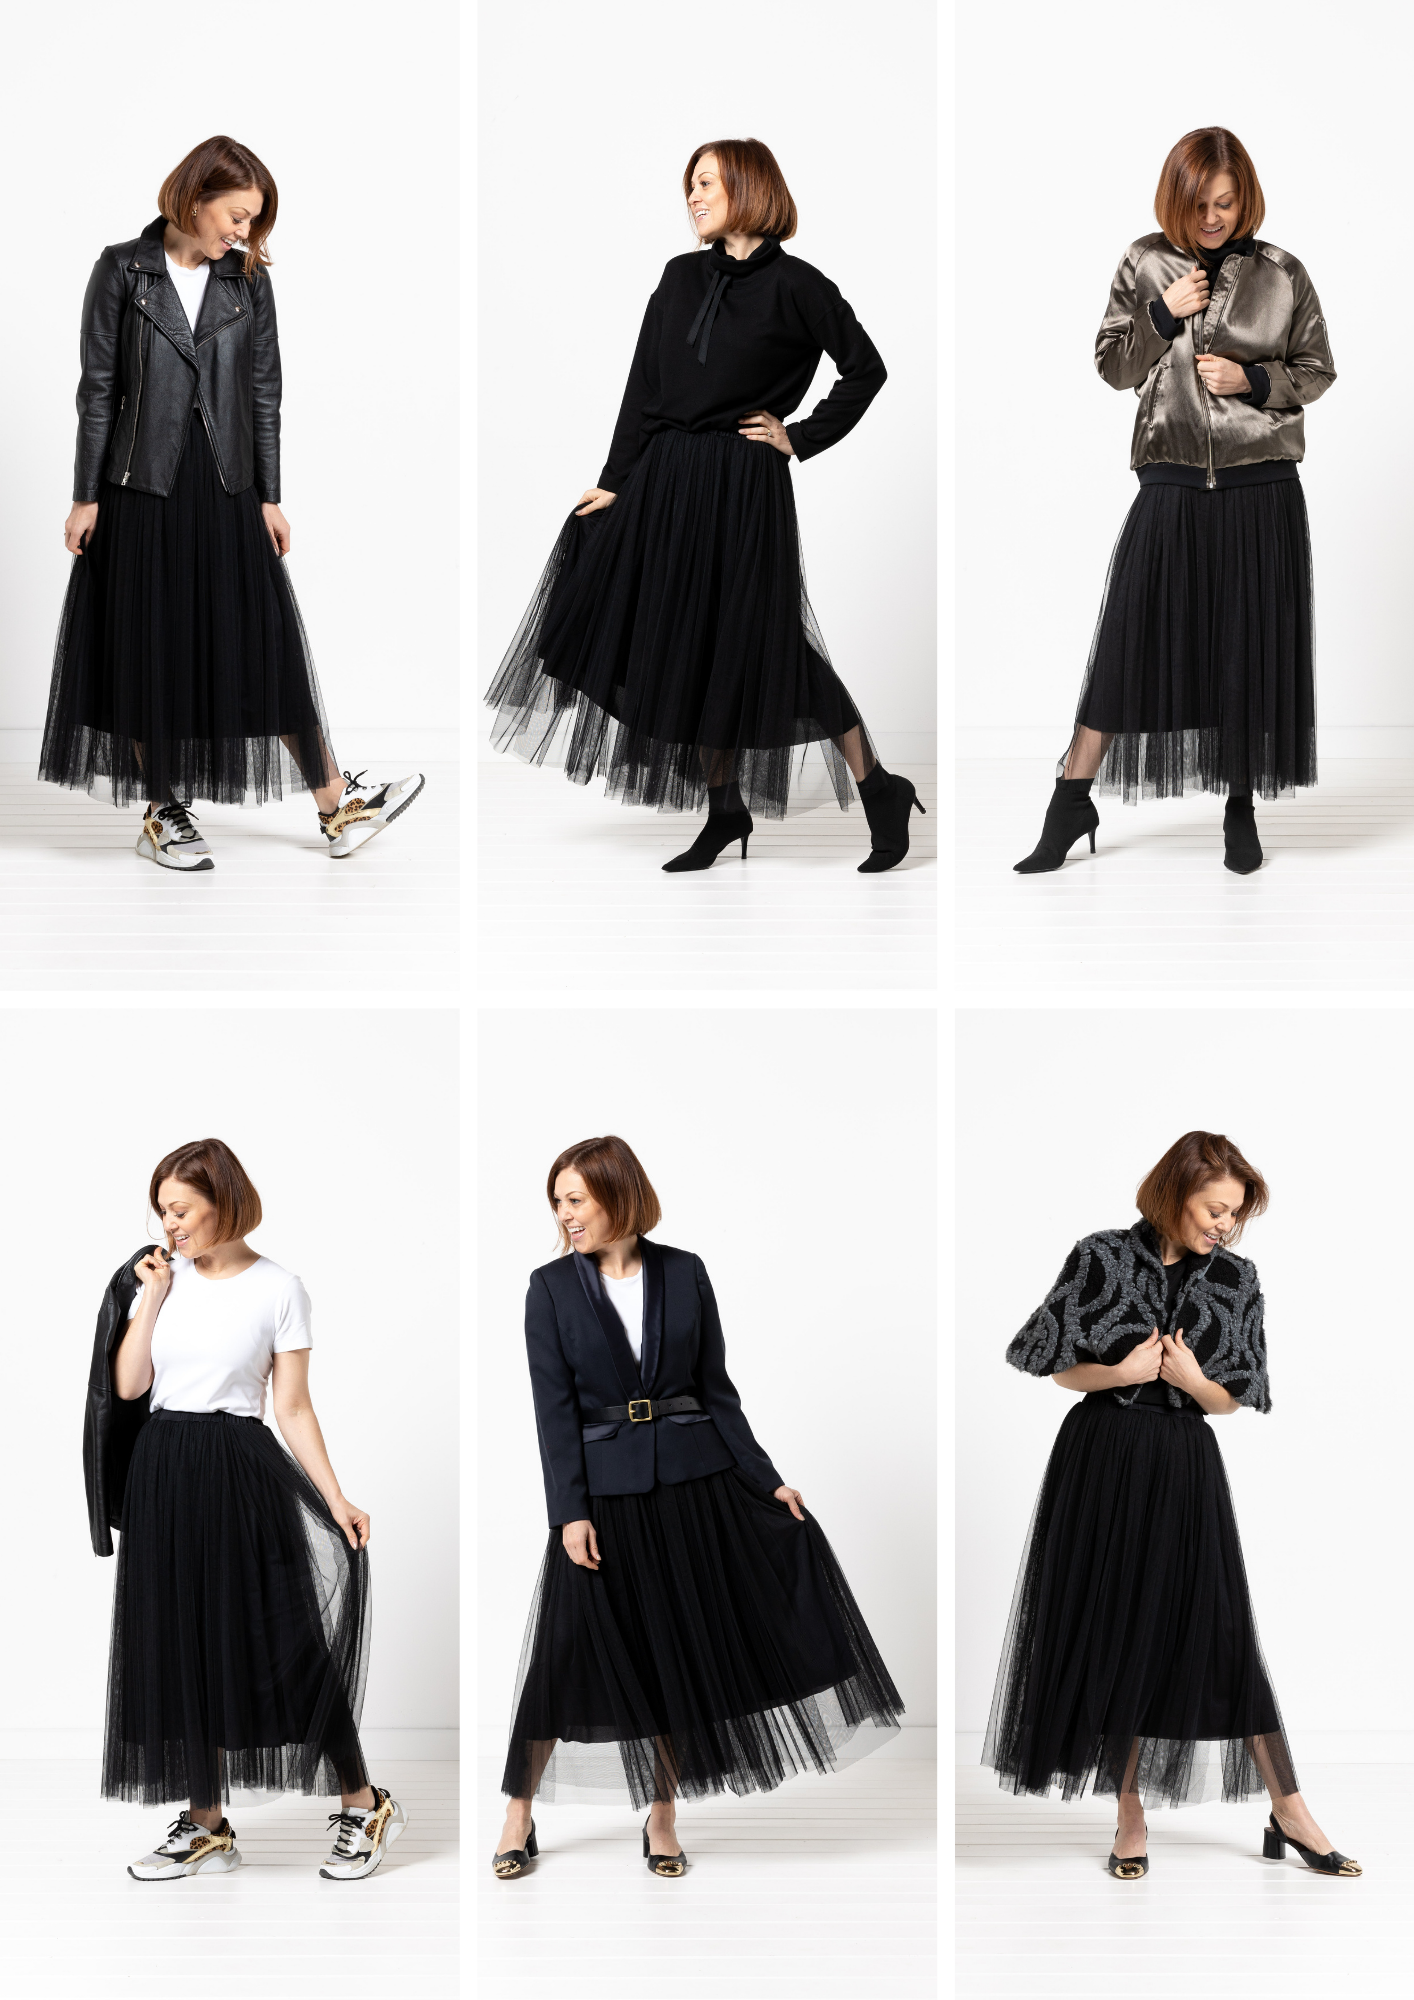 So many ways to style the Miranda Skirt!